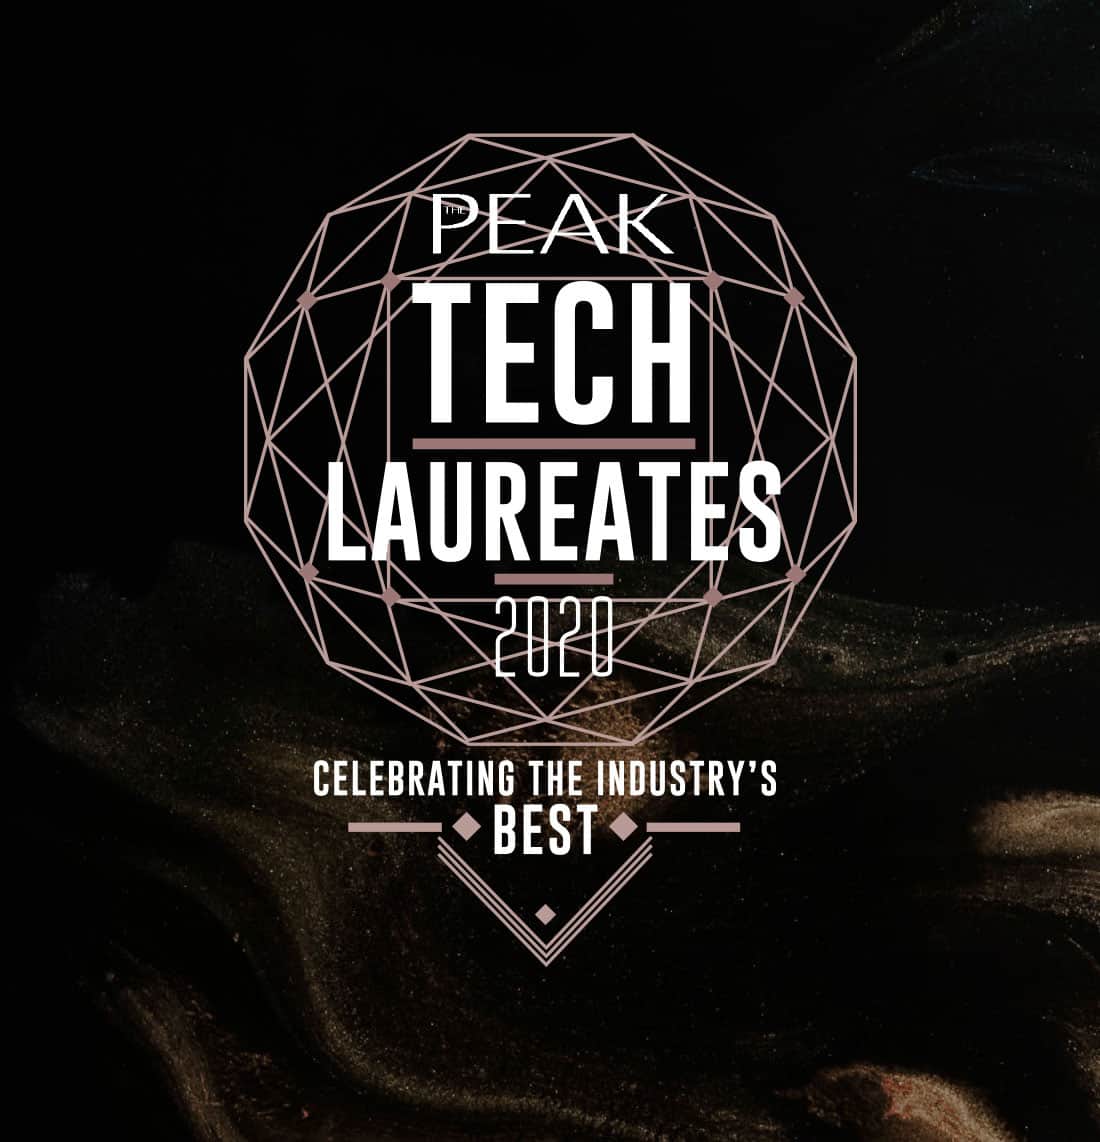 The Peak Tech Laureates 2020